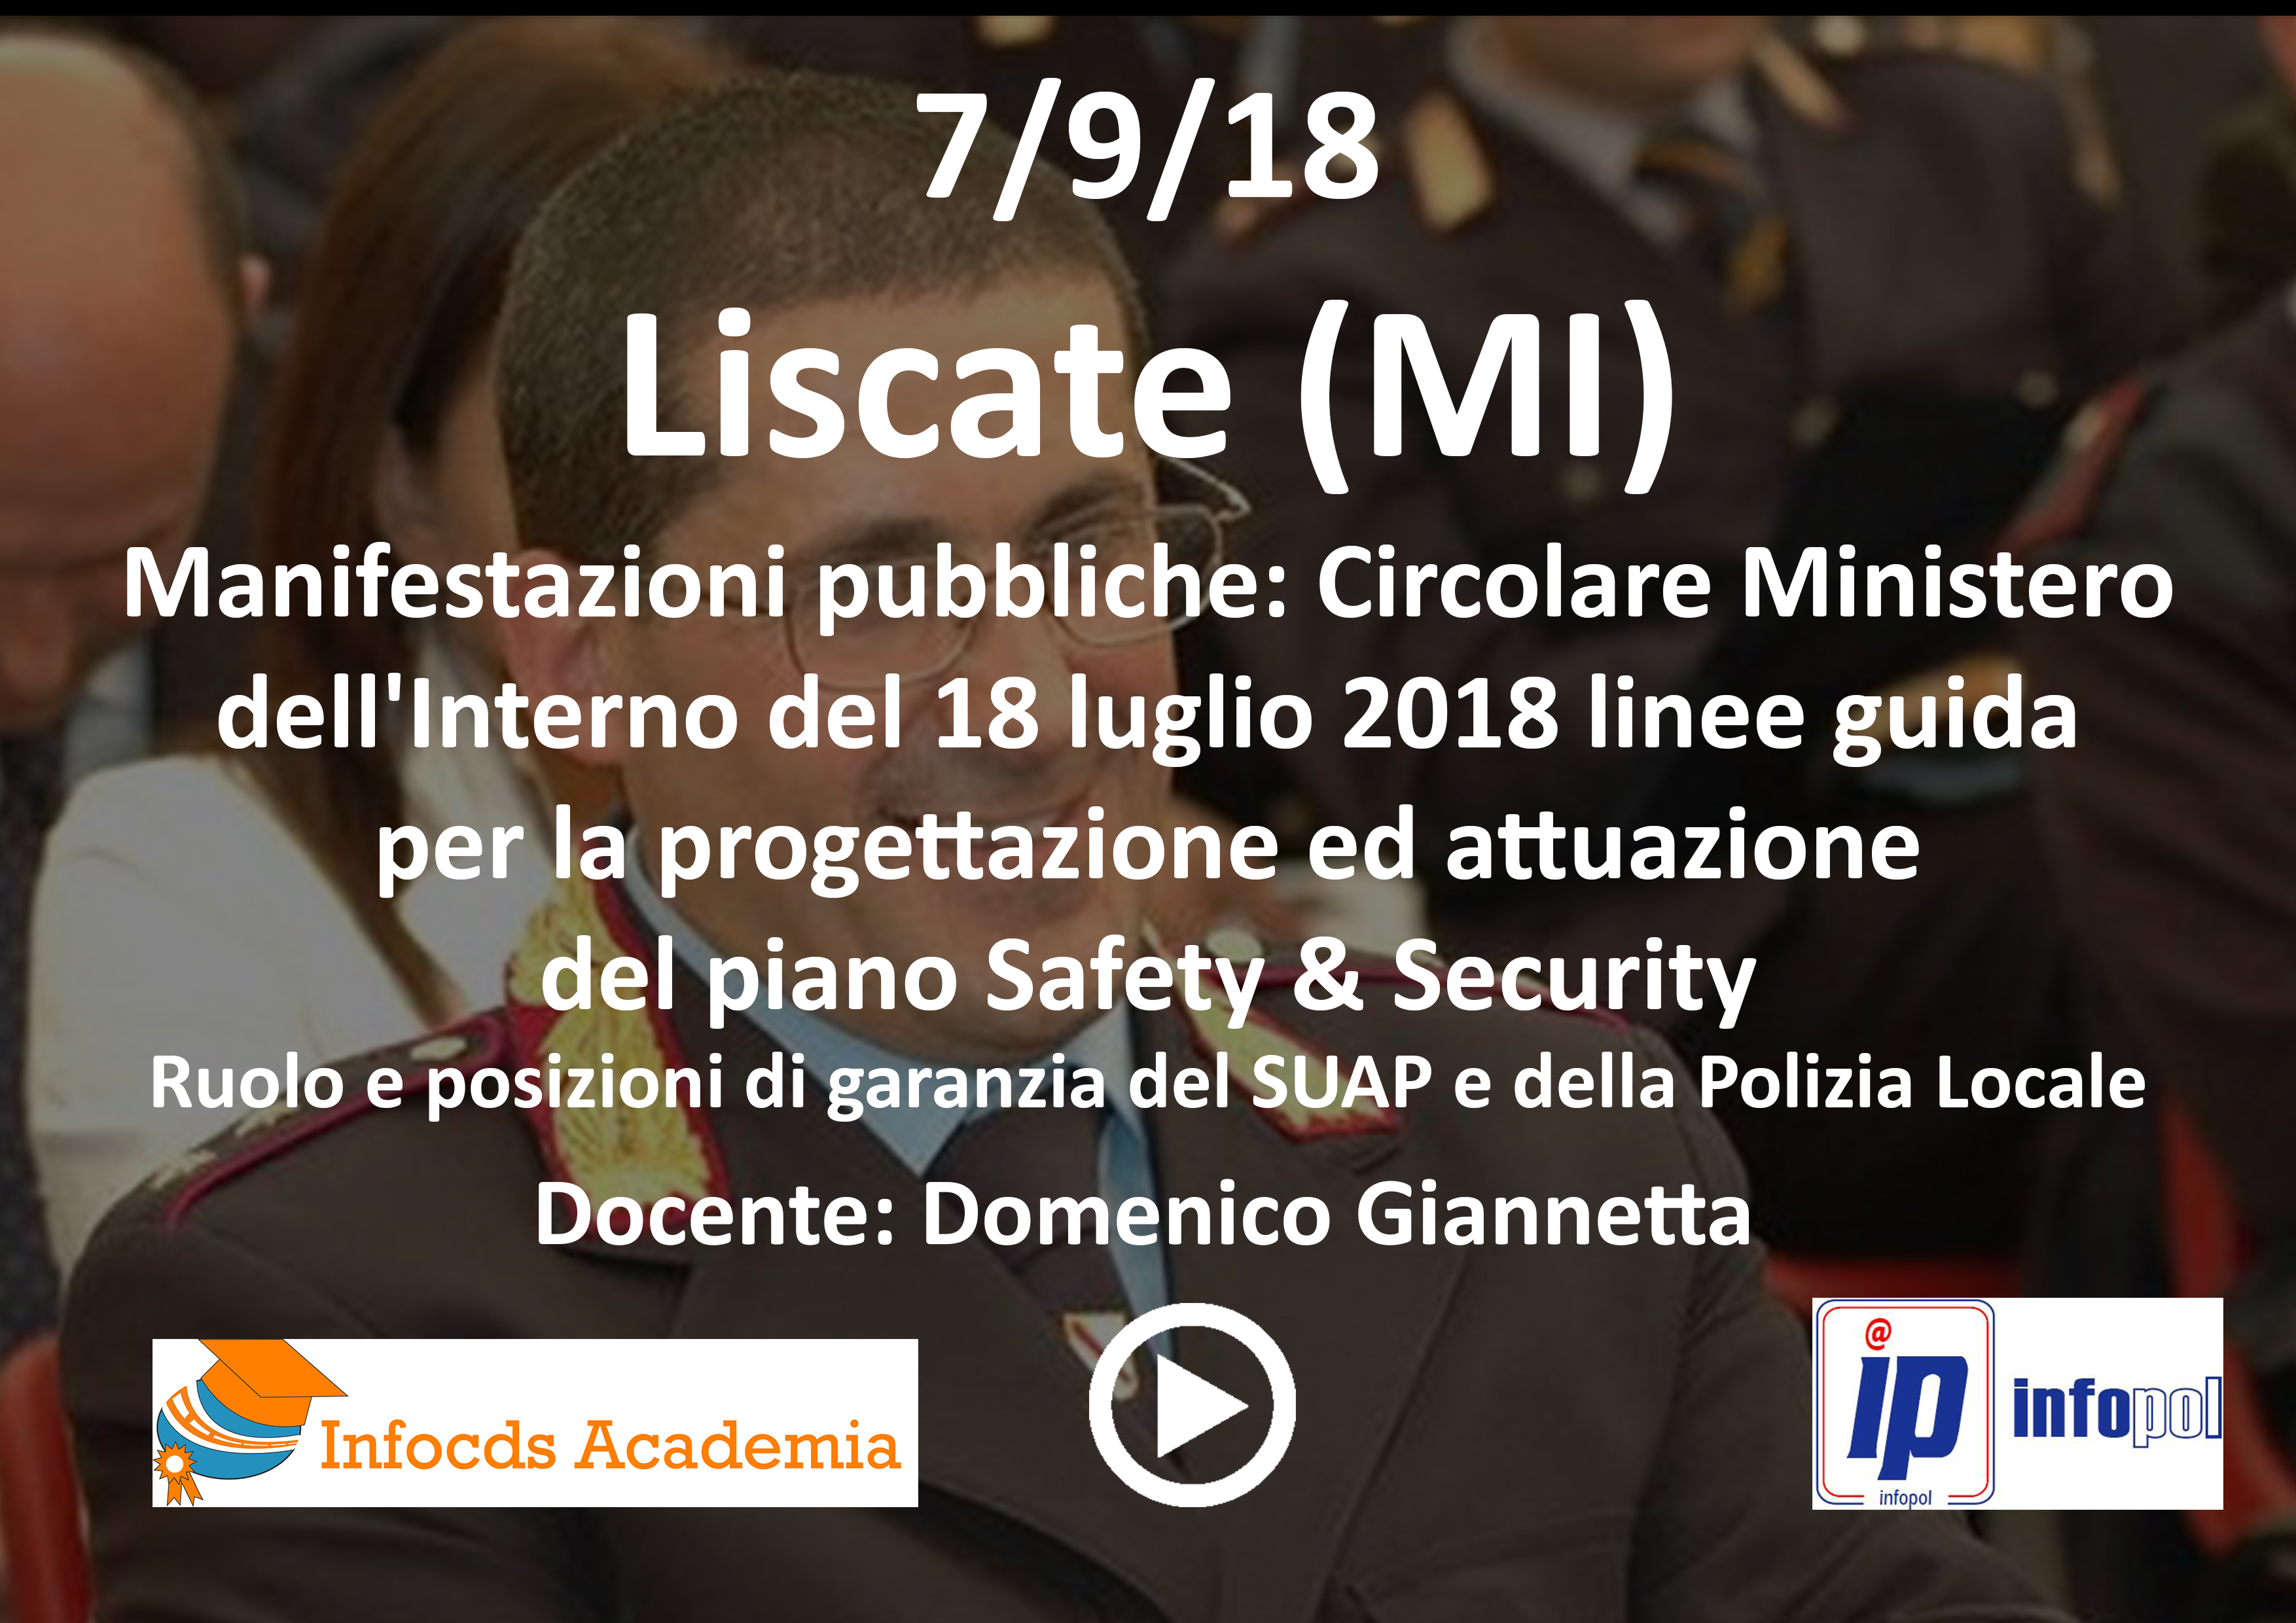 Manifestazioni pubbliche: Circolare Ministero dell'Interno del 18 luglio 2018 linee guida per la progettazione ed attuazione del piano Safety & Security - Domenico Giannetta